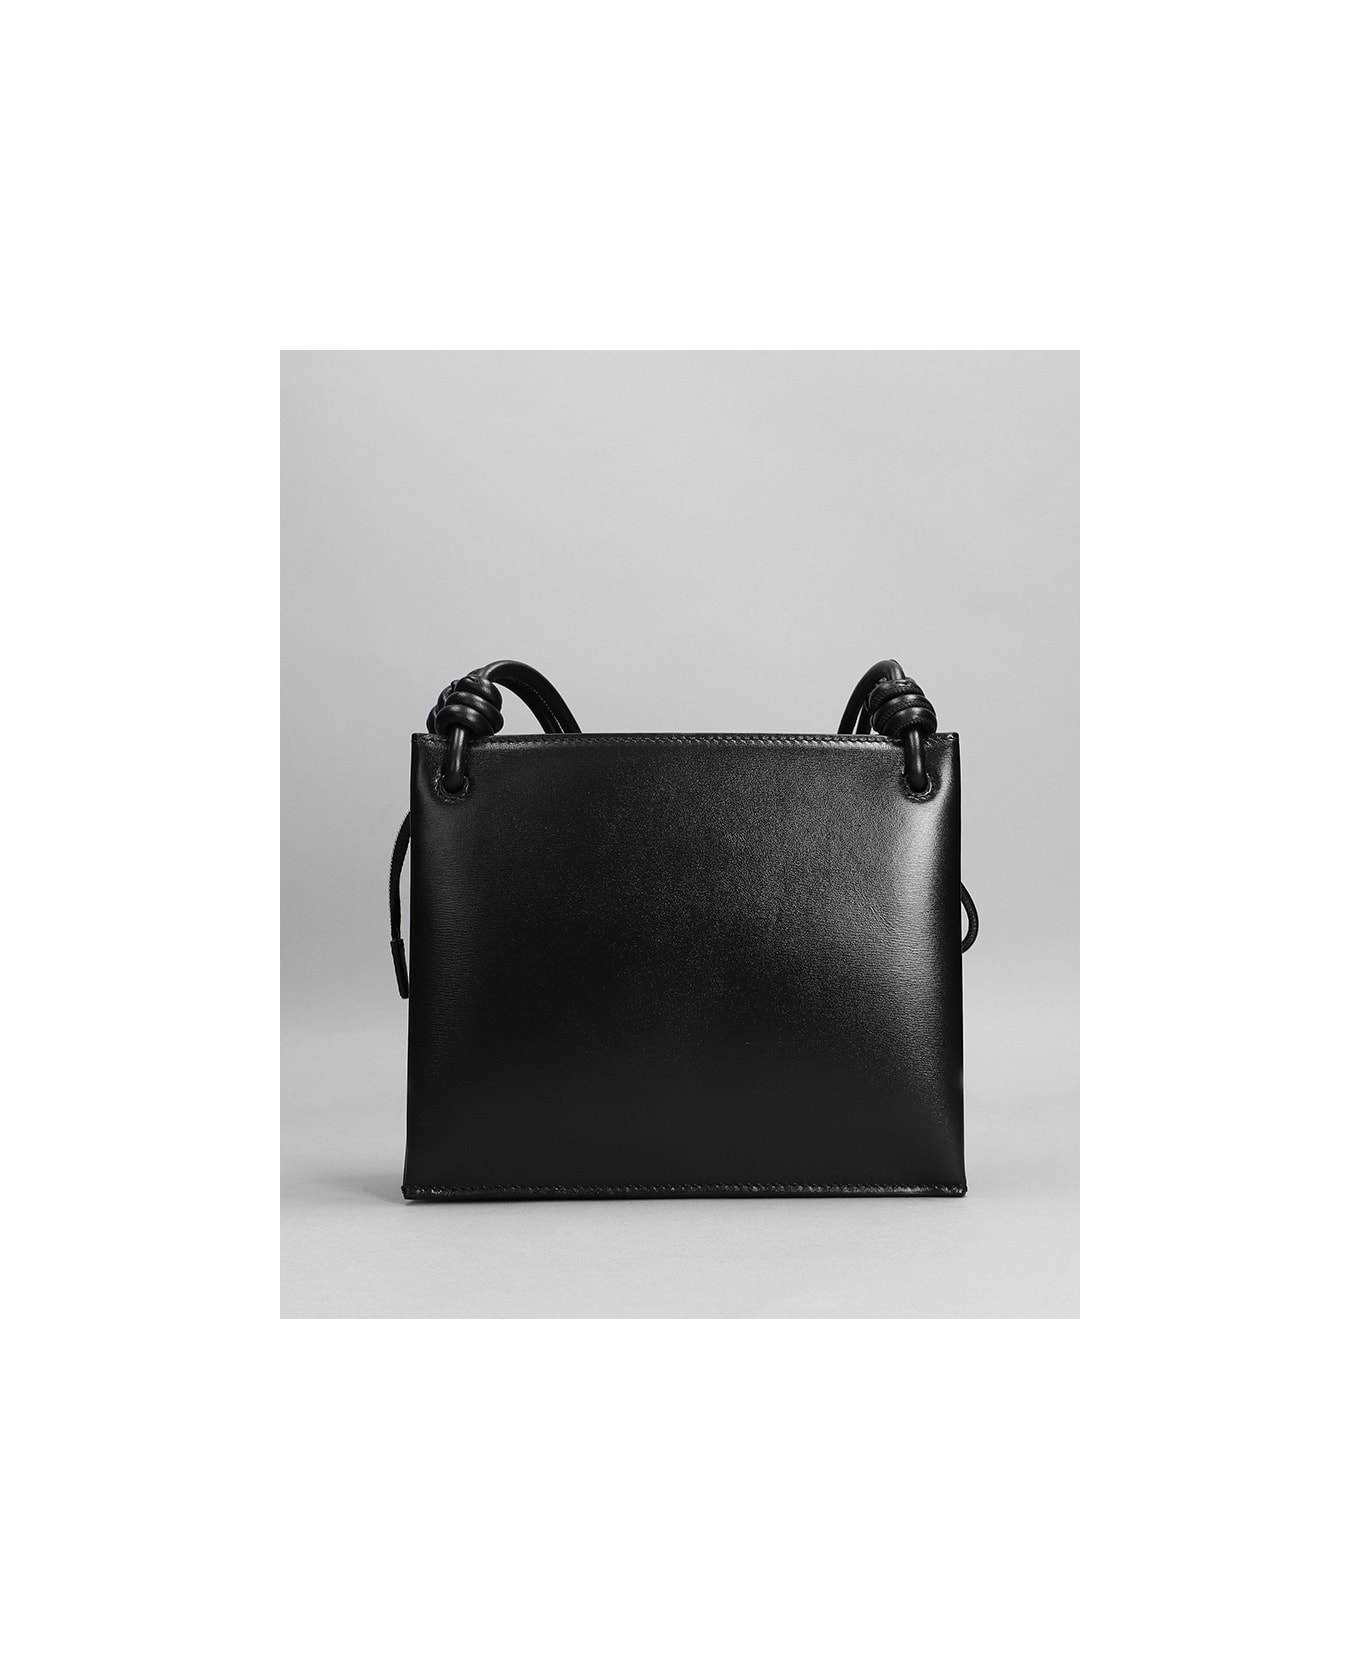 Jil Sander Black Leather Small Giro Shoulder Bag - 001